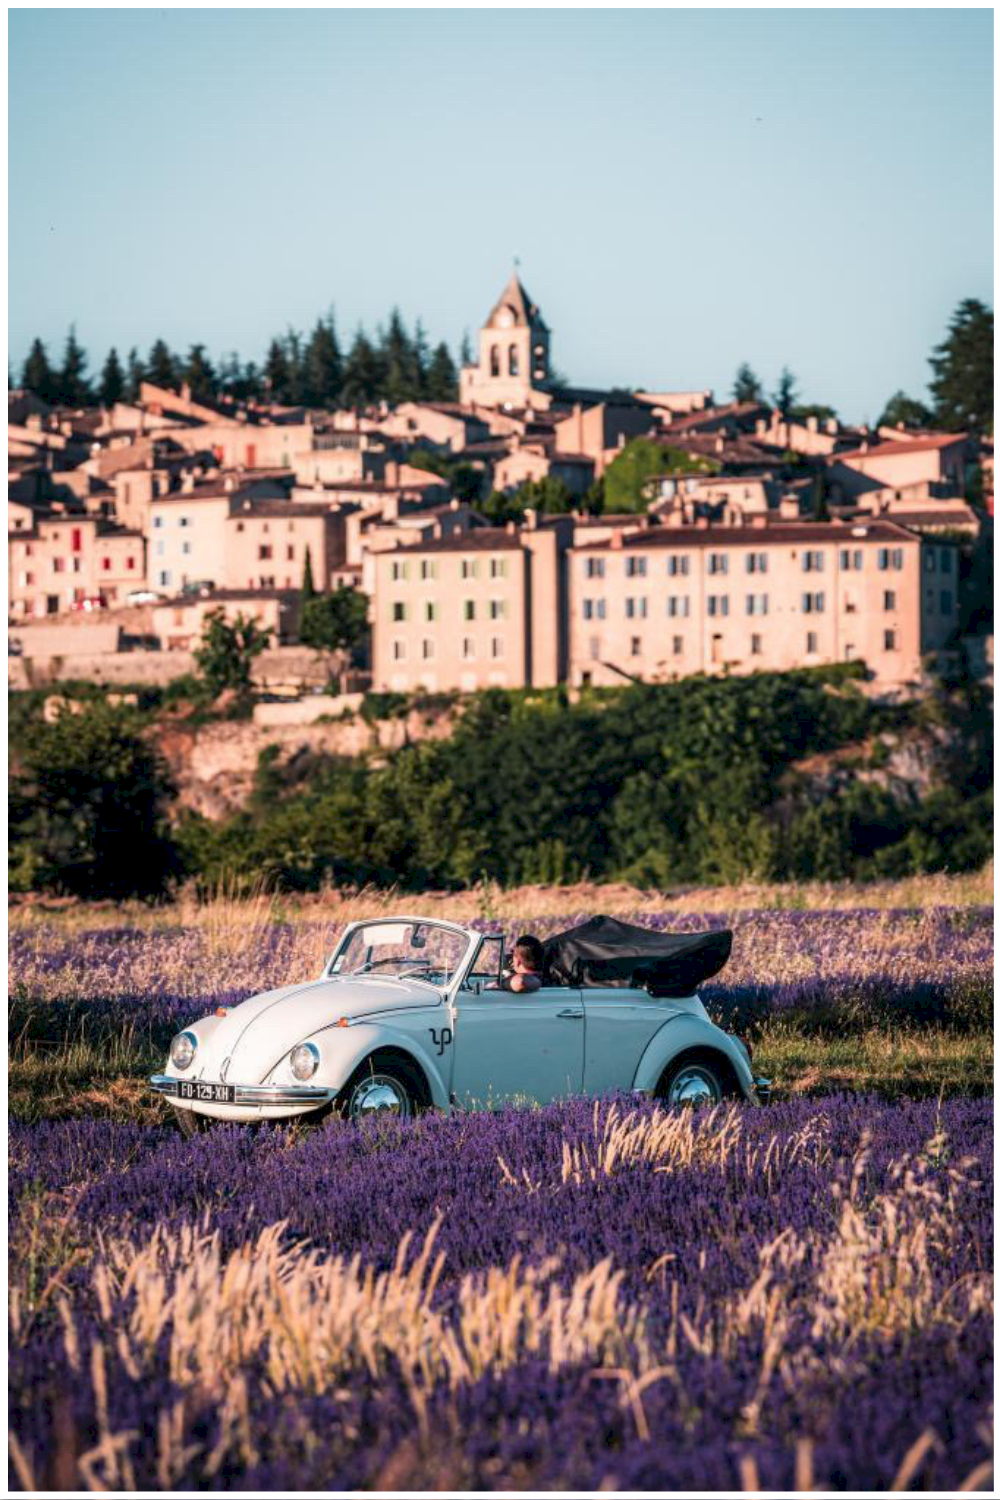 Mariage dans les lavandes en Coccinelle décapotable en Provence